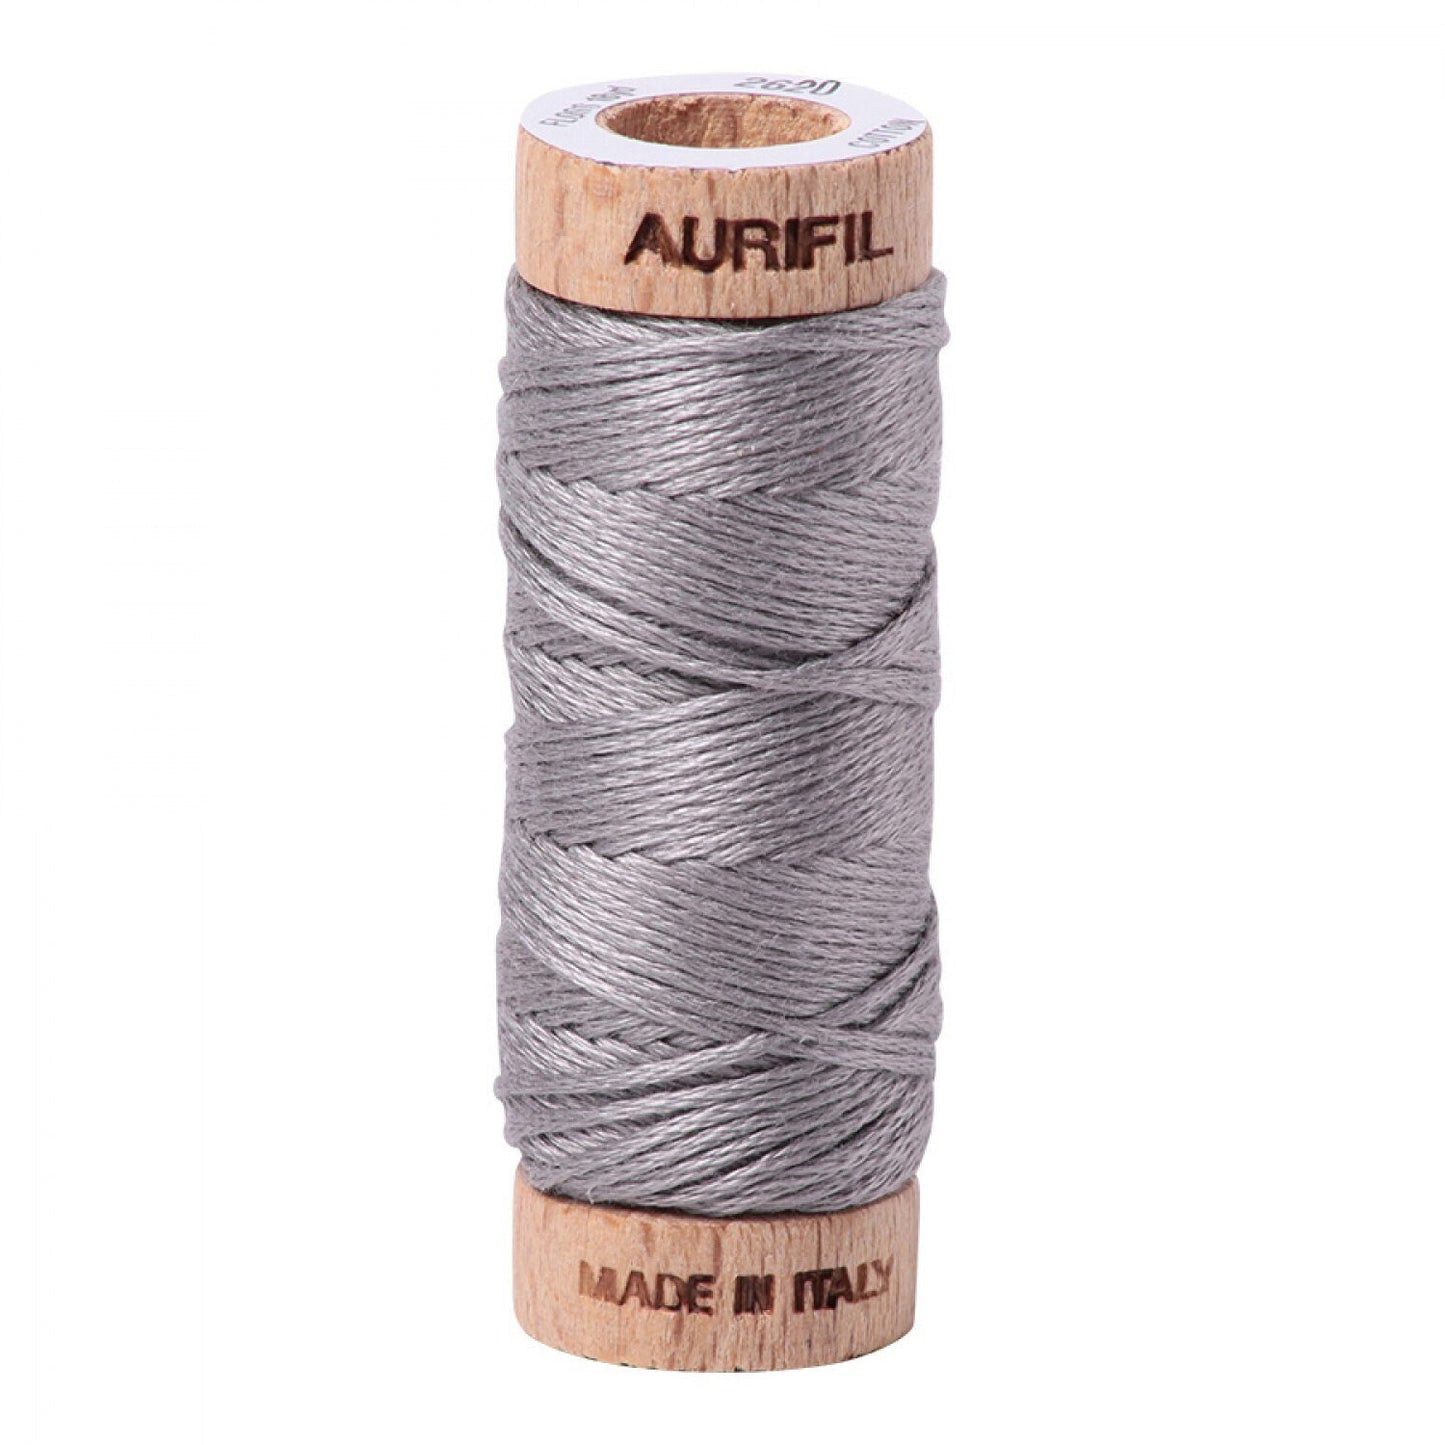 Stainless Steel Aurifil Floss - 2620 - Aurifloss